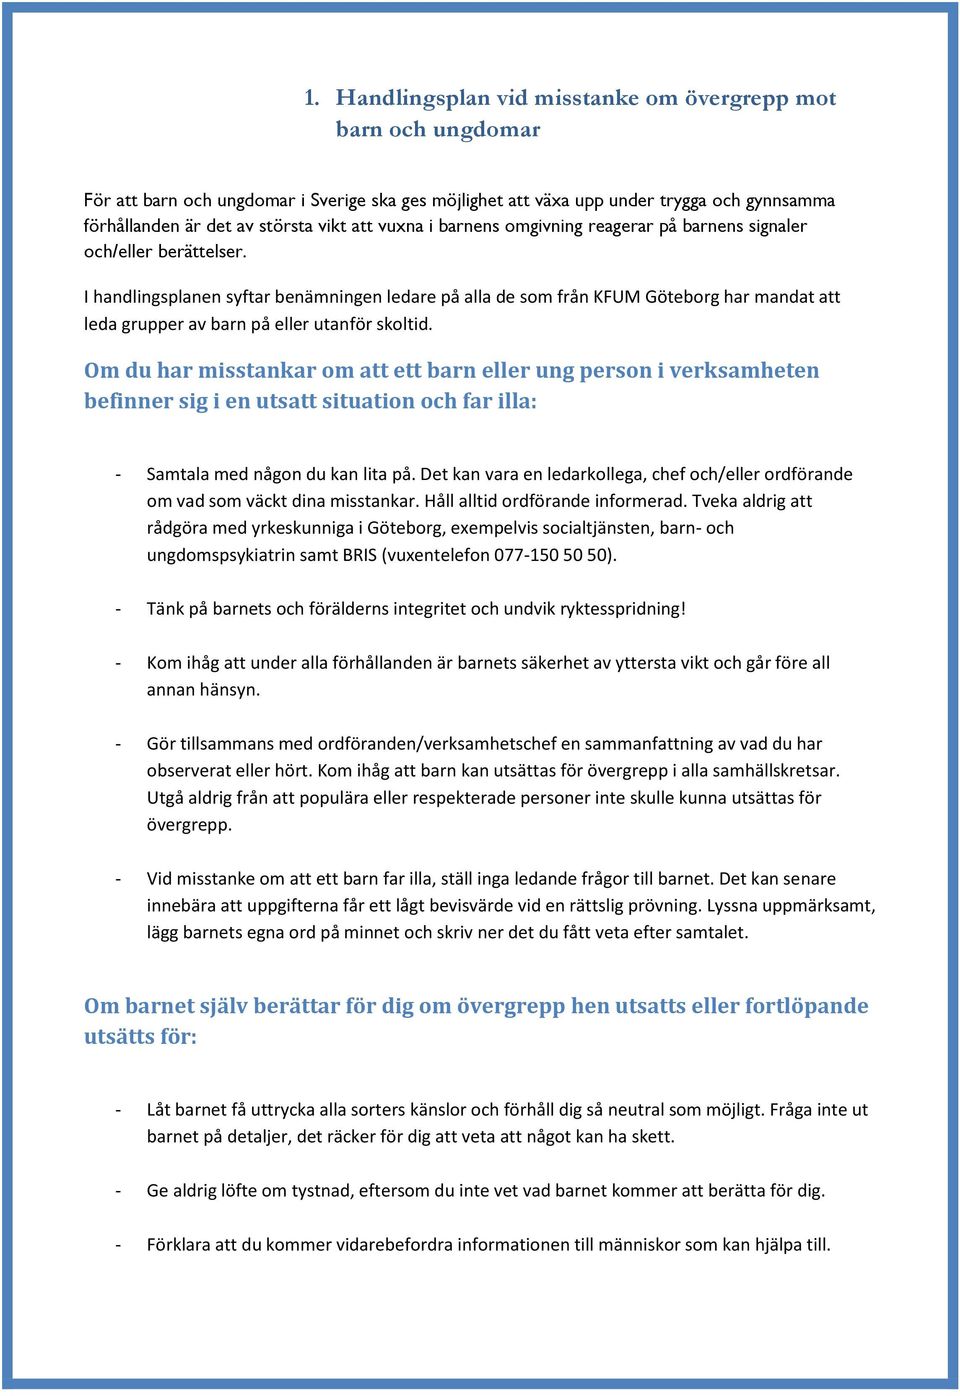 I handlingsplanen syftar benämningen ledare på alla de som från KFUM Göteborg har mandat att leda grupper av barn på eller utanför skoltid.